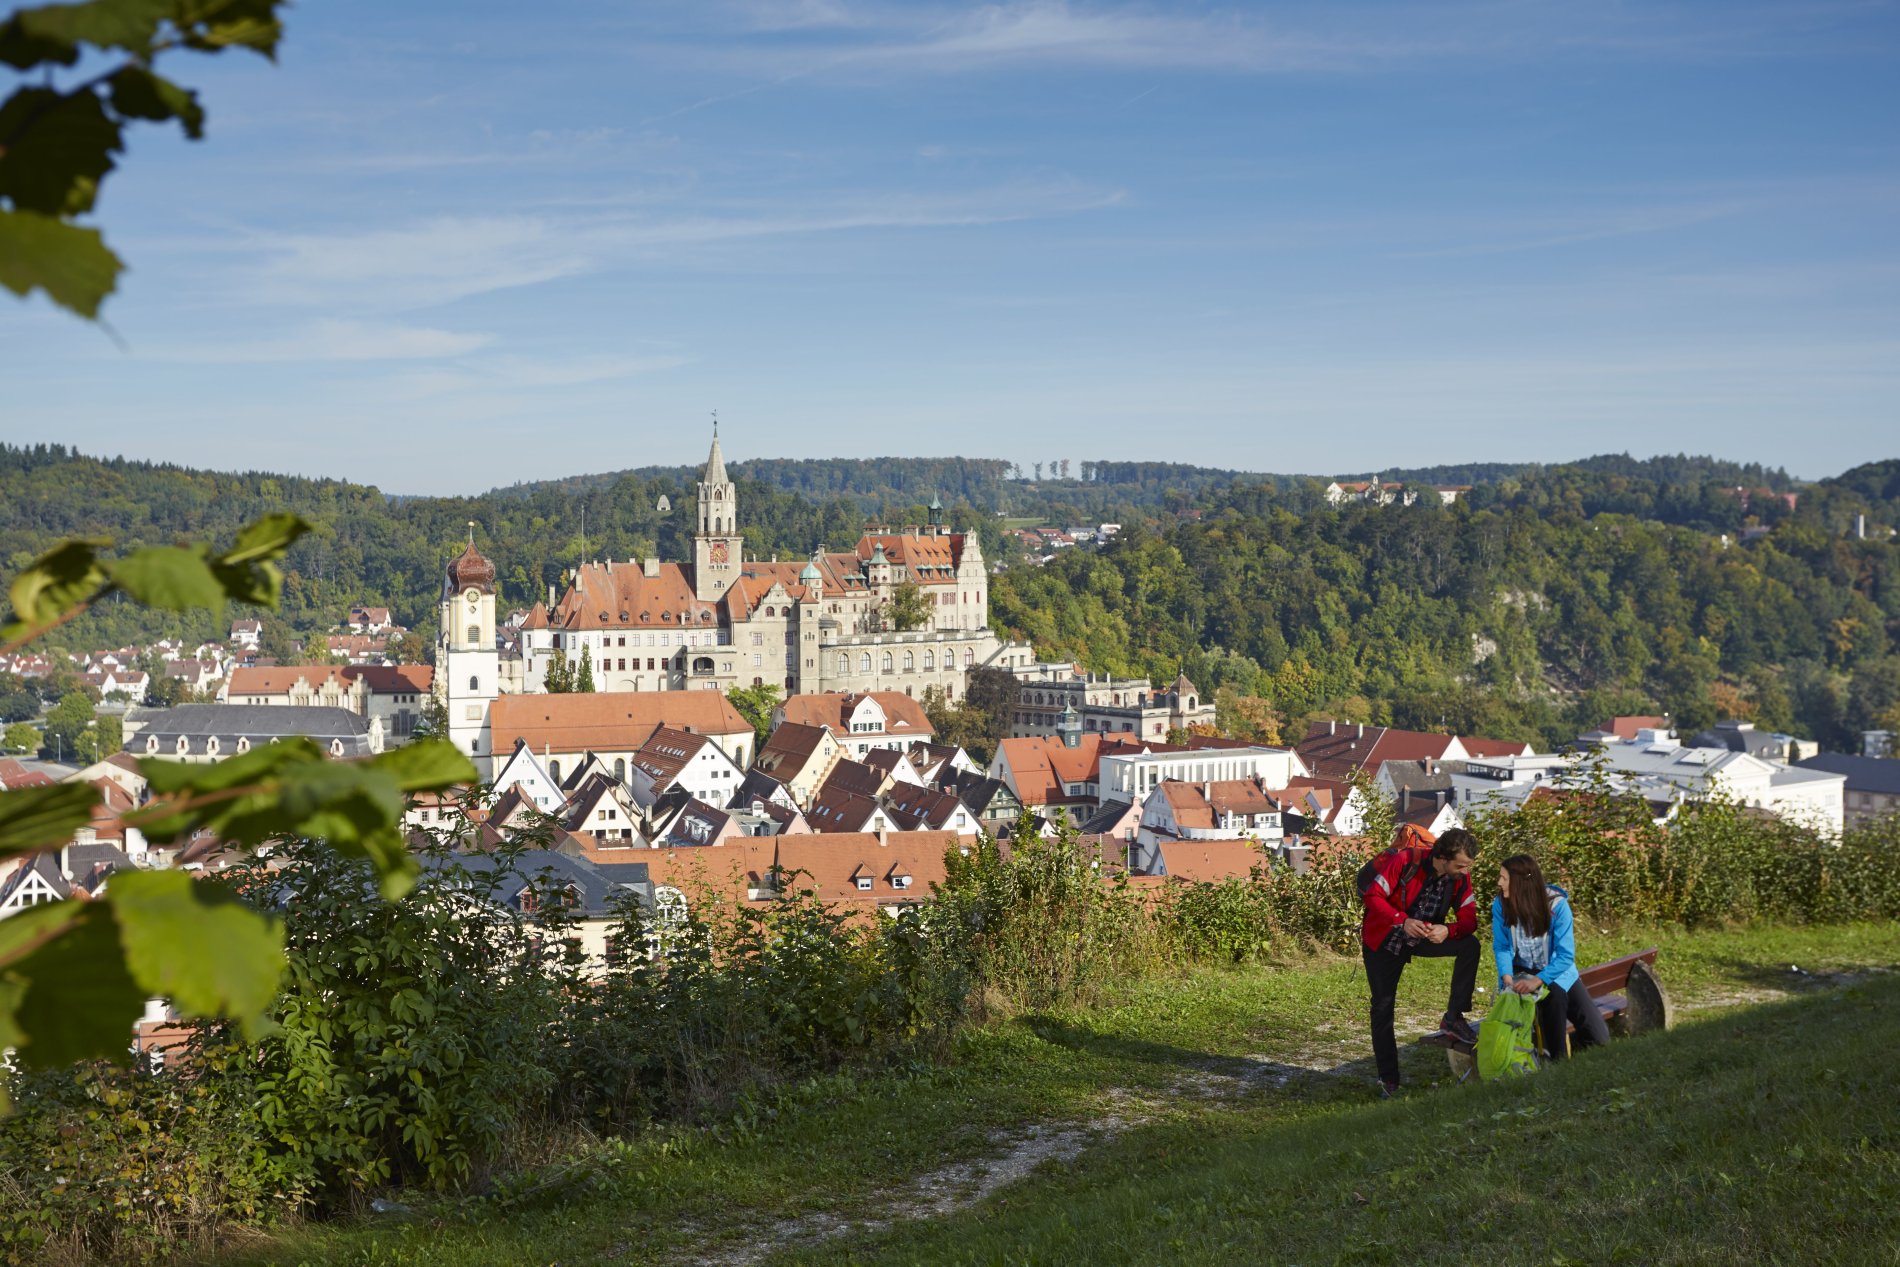 Wanderpaar auf dem Josefsberg, dahinter die Sigmaringer Innenstadt mit Schloss.